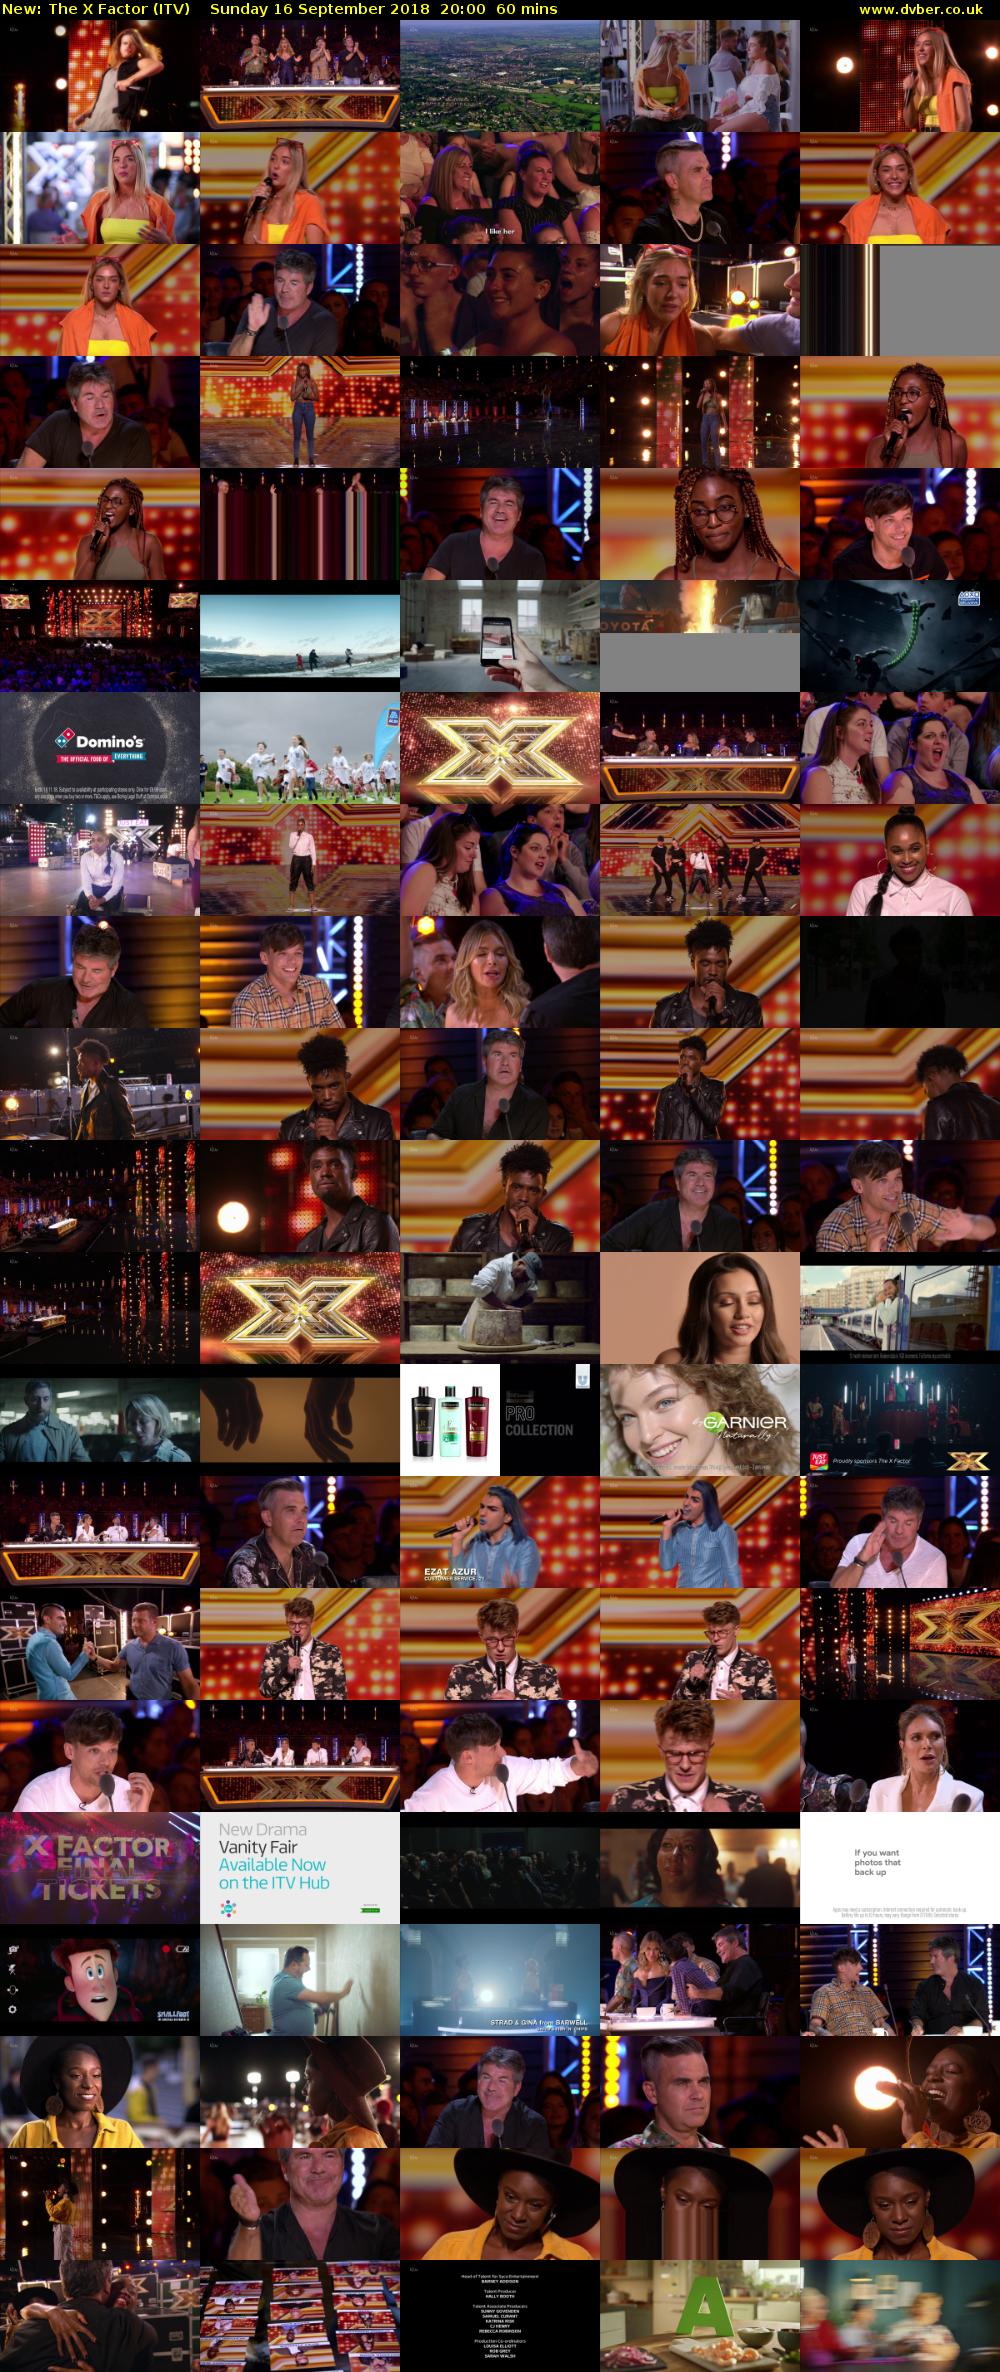 The X Factor (ITV) Sunday 16 September 2018 20:00 - 21:00